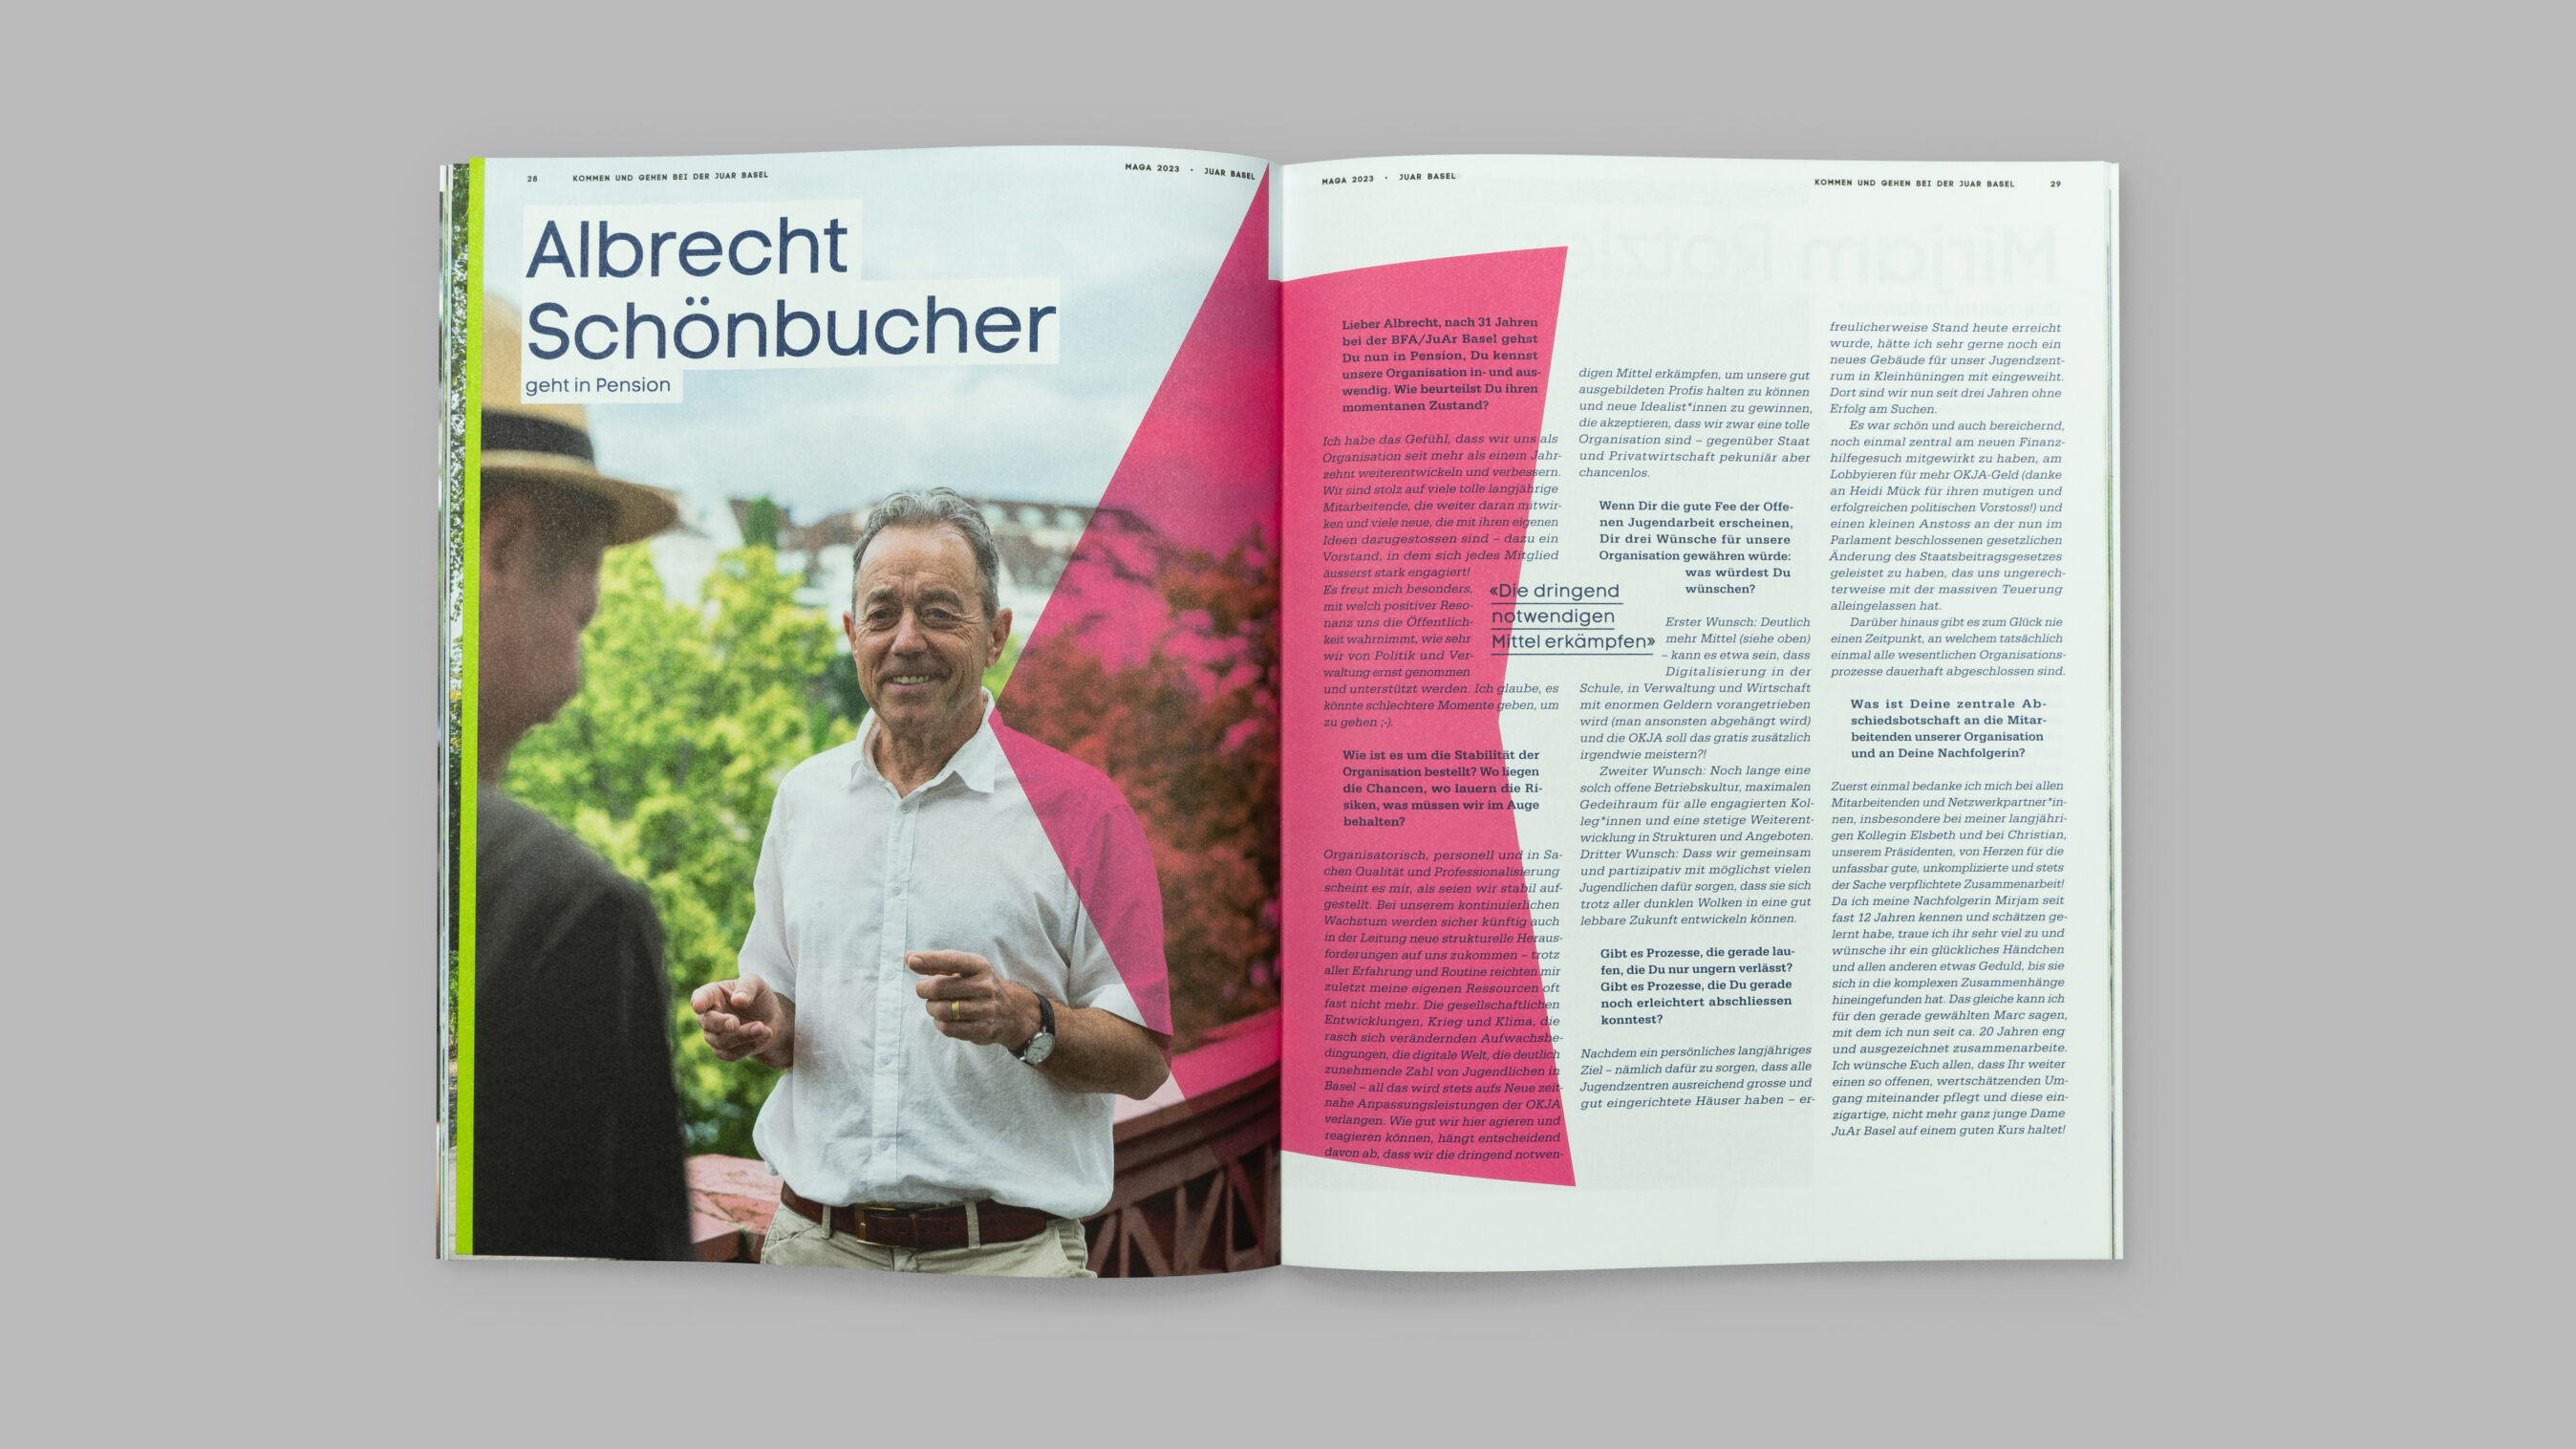 Kommen und Gehen bei der JuAr Basel. Interview von Christian Platz mit Albrecht Schönbucher. Layout Grafikdesign Cueni Basel.